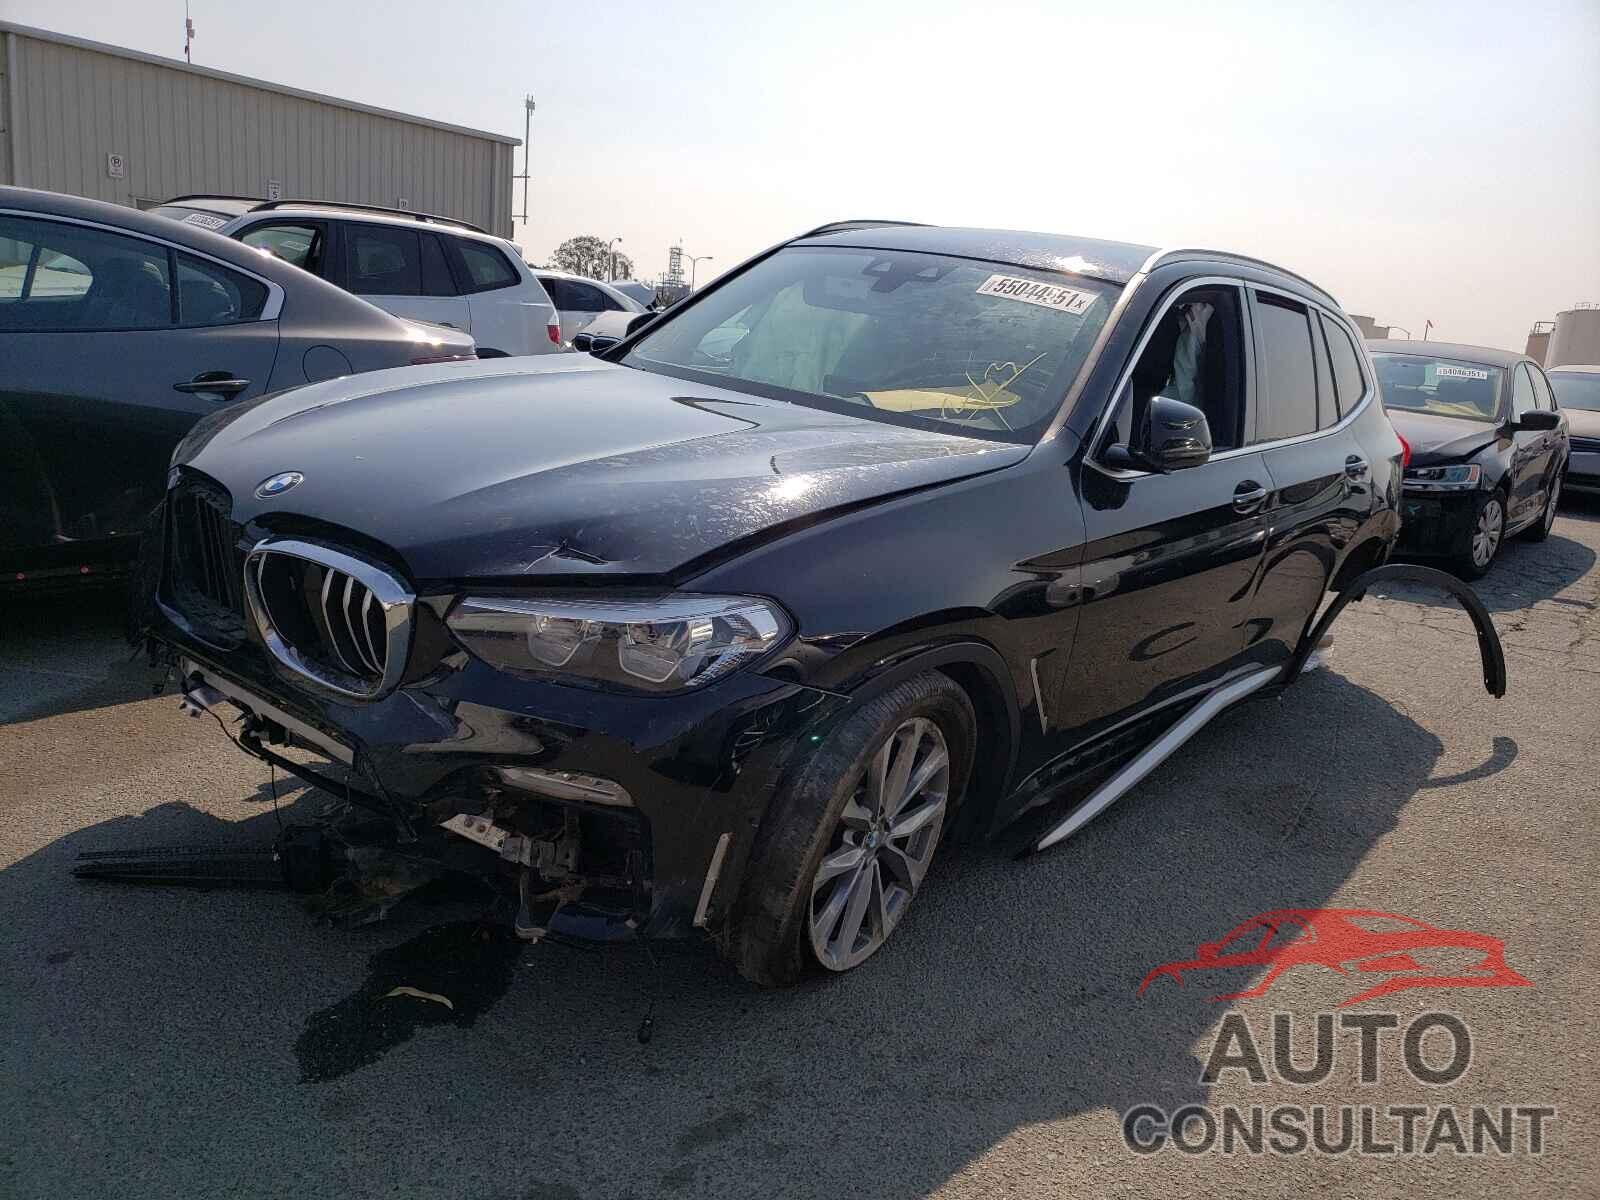 BMW X3 2019 - 5UXTR9C53KLE20238